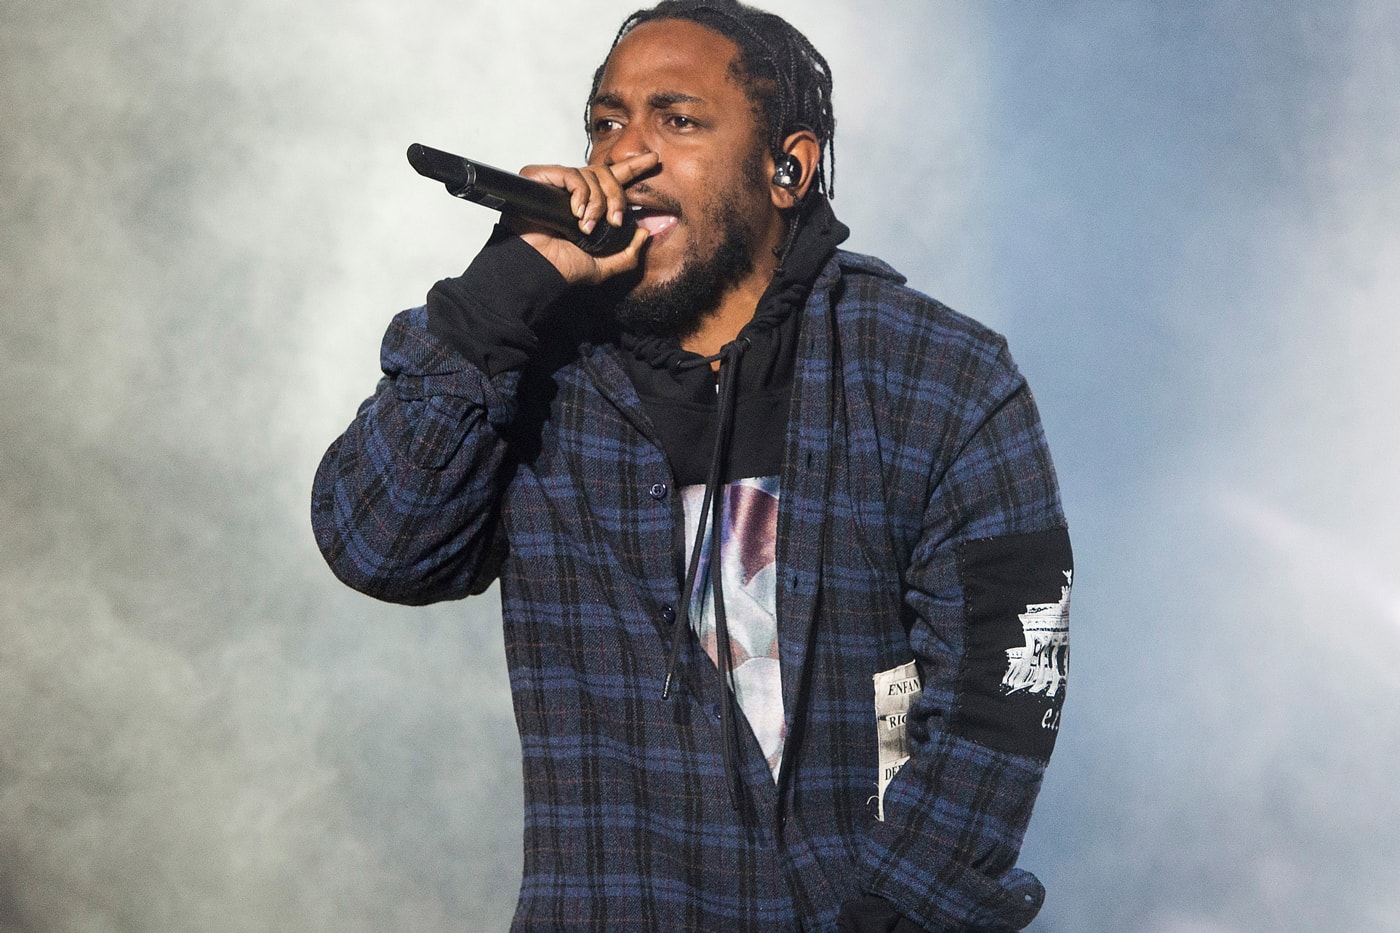 Kendrick Lamar Let Fans Rap Humble At Concert